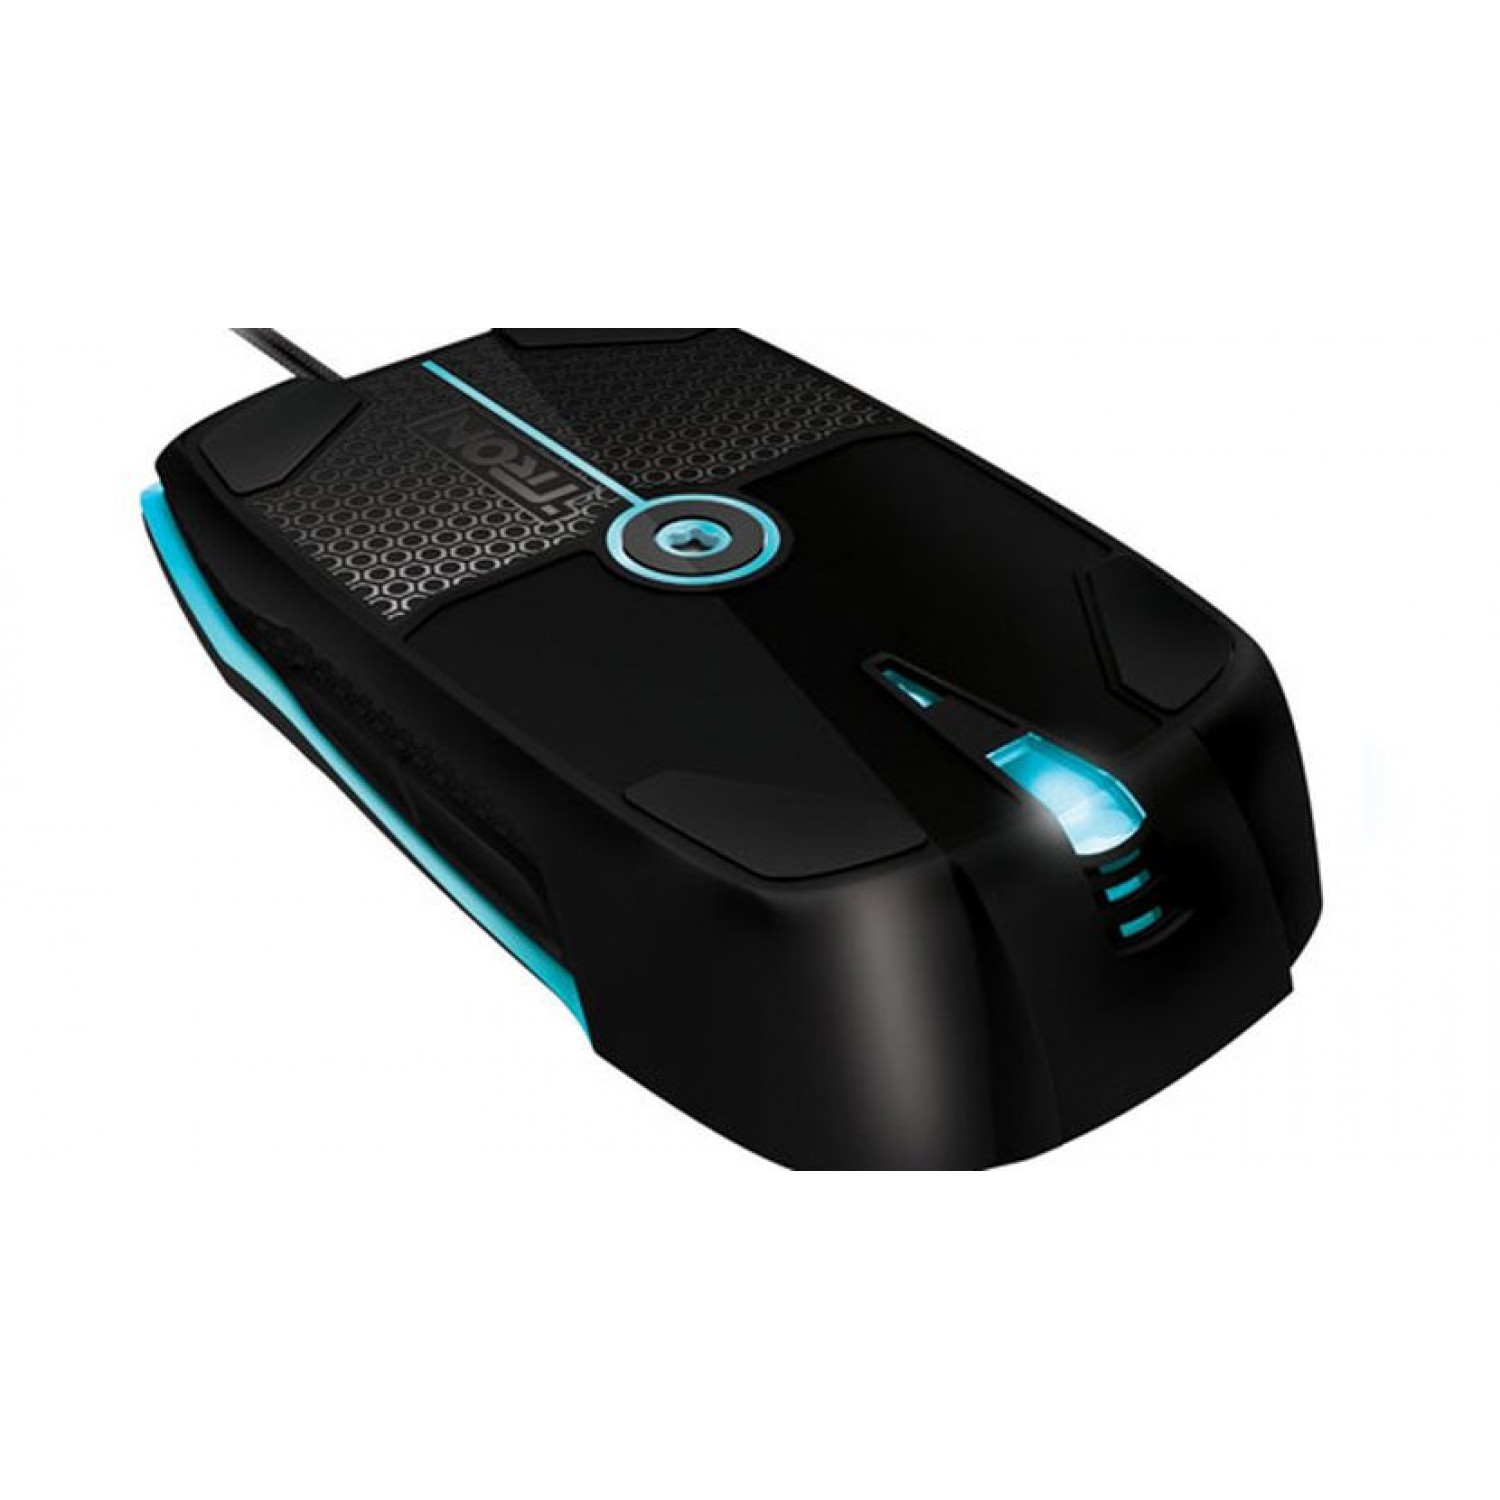 Razer Tron Ambidextrous Gaming Mouse -4